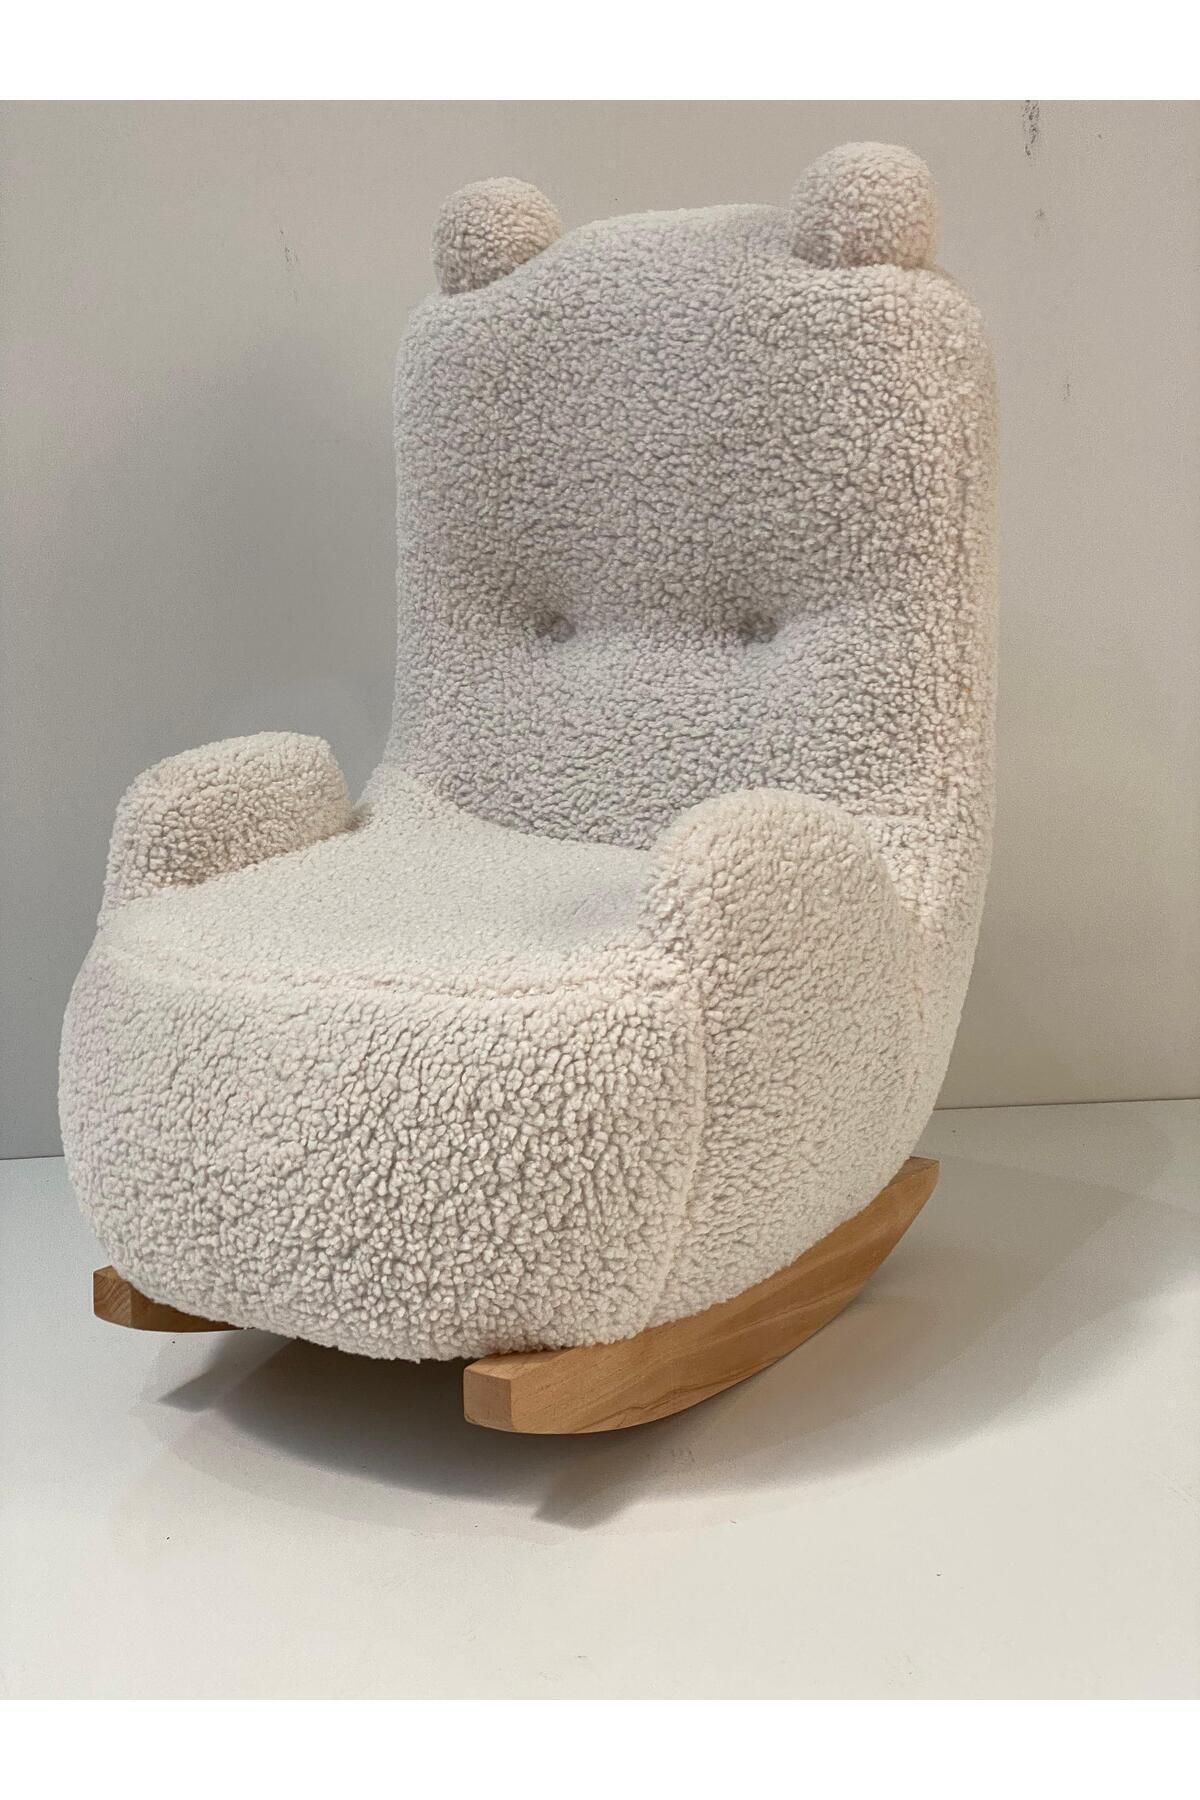 esilamobilya Teddy Kumaşlı Ahşap Ayaklı sallanan Çocuk Bebek Koltuğu Sandalyesi (sallanır)